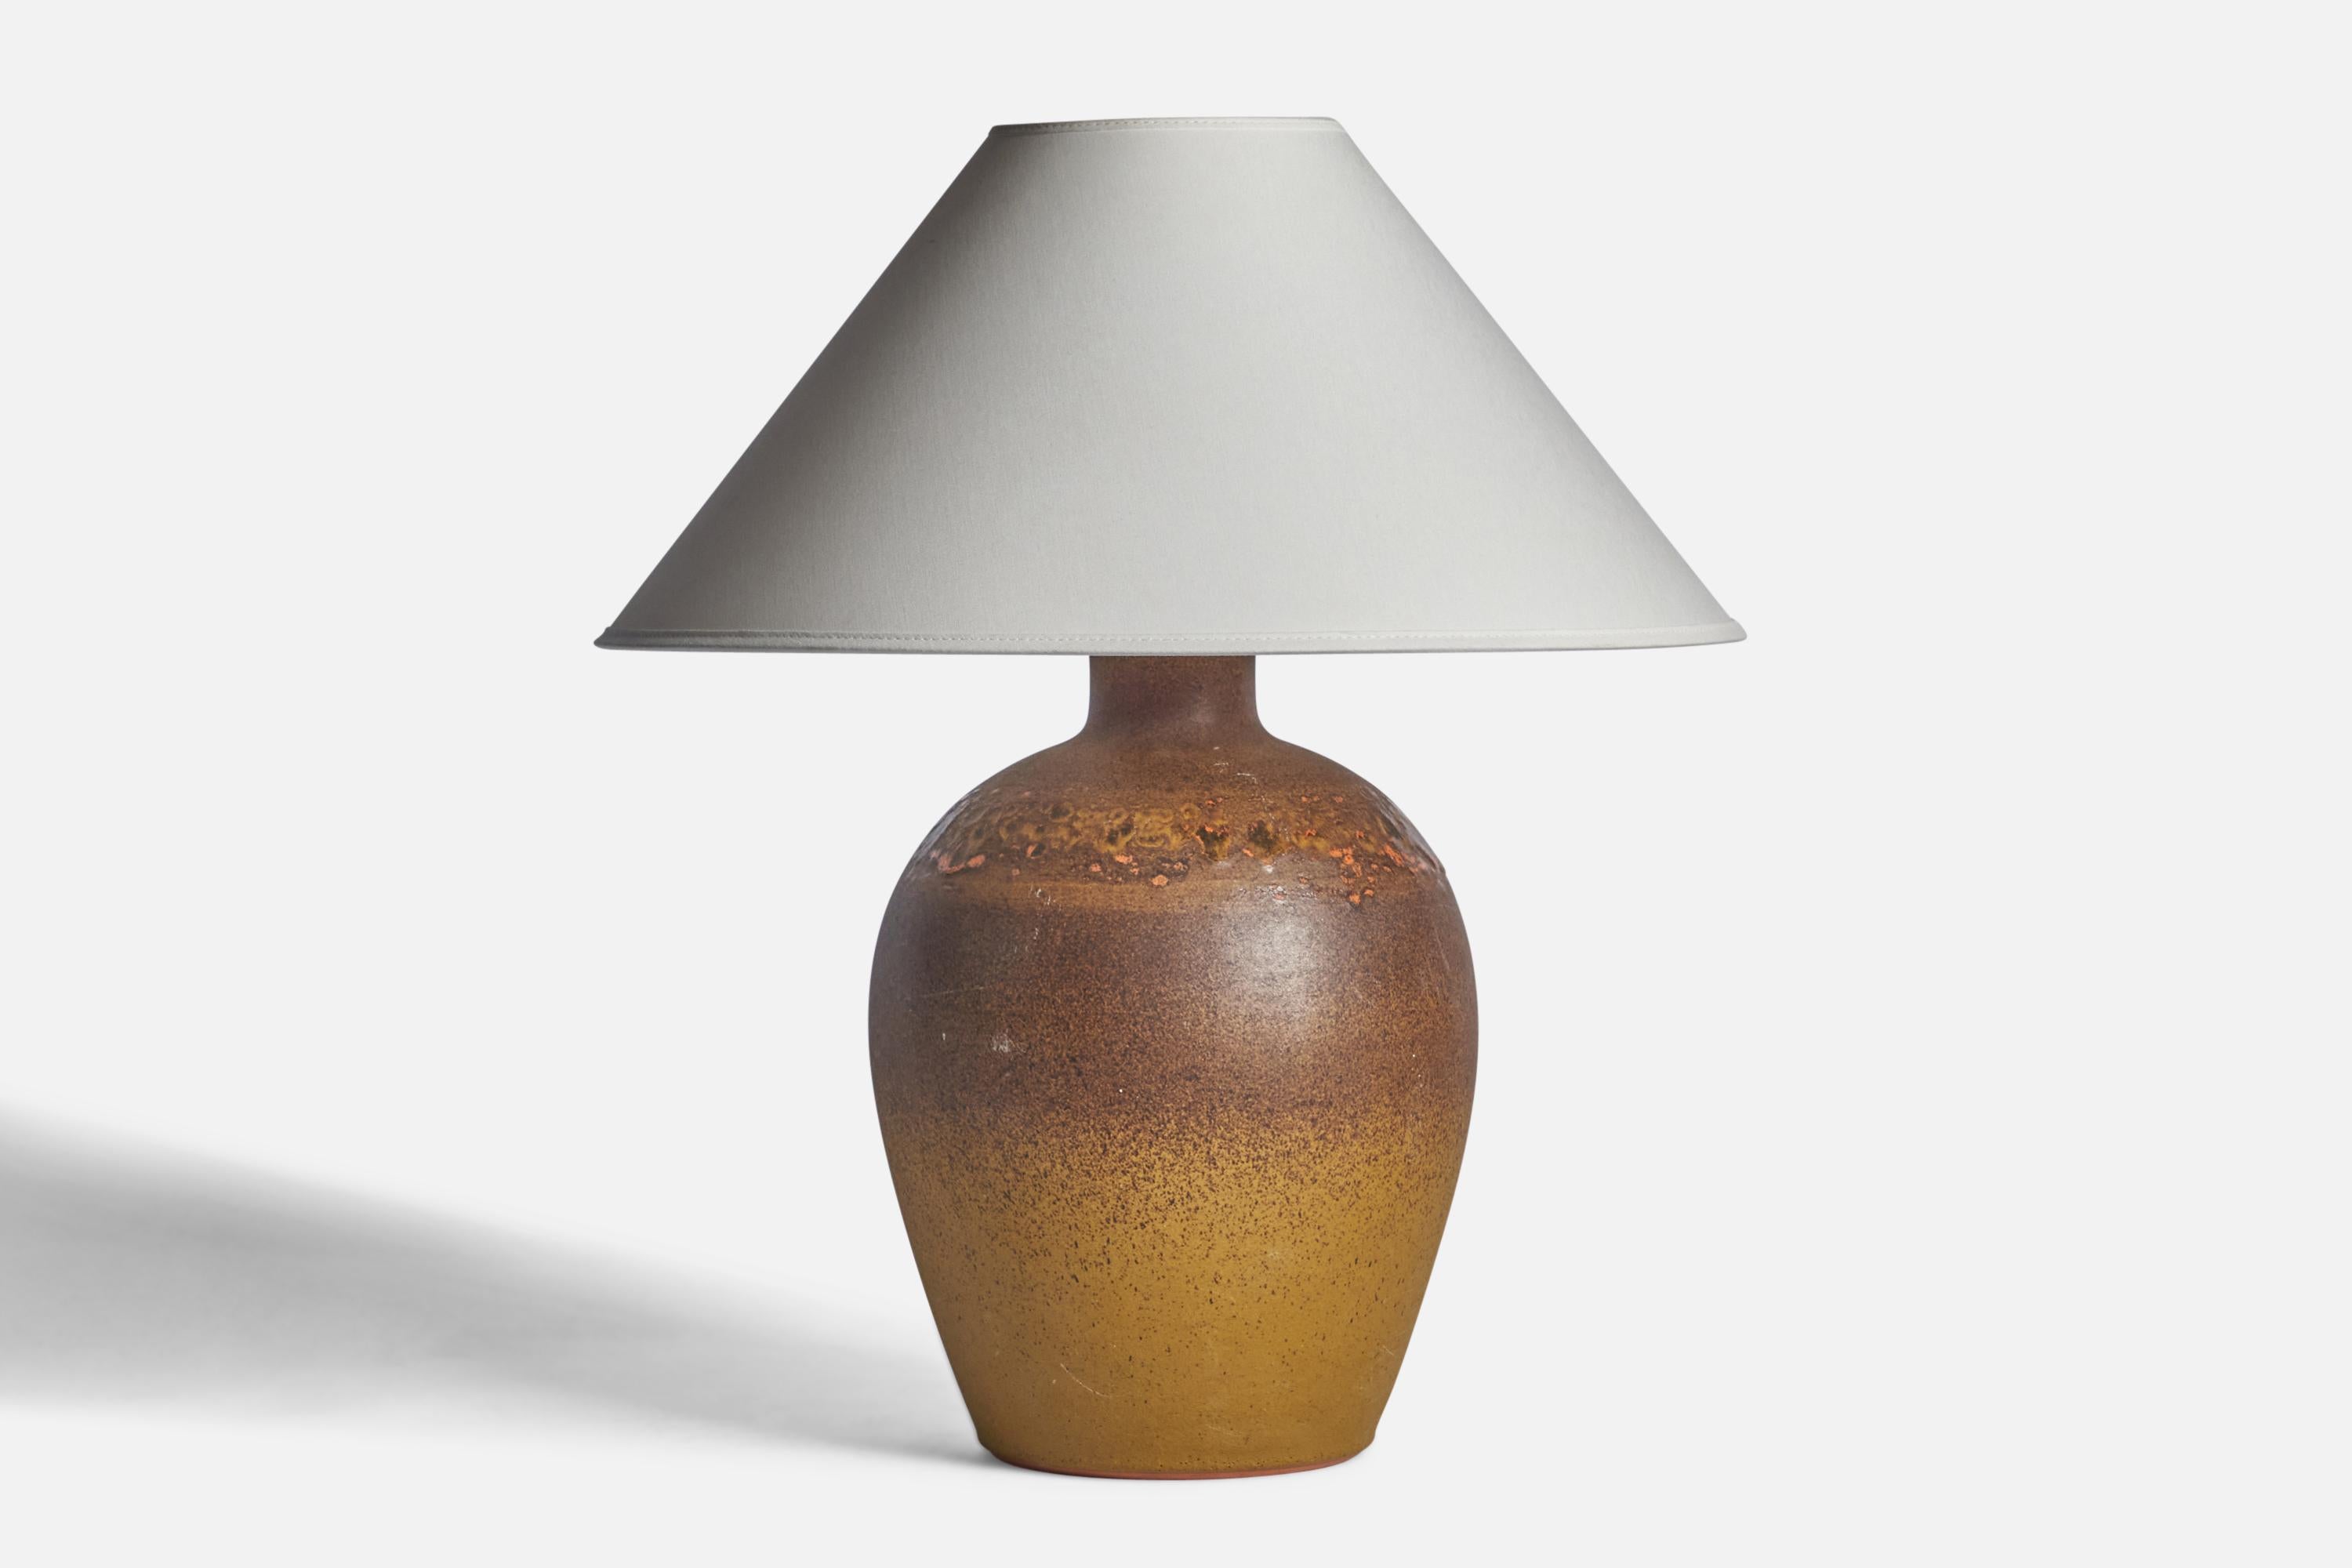 Lampe de table en grès émaillé brun et jaune, conçue et produite par Tilgmans Keramik, Suède, années 1960.

Dimensions de la lampe (pouces) : 14.25